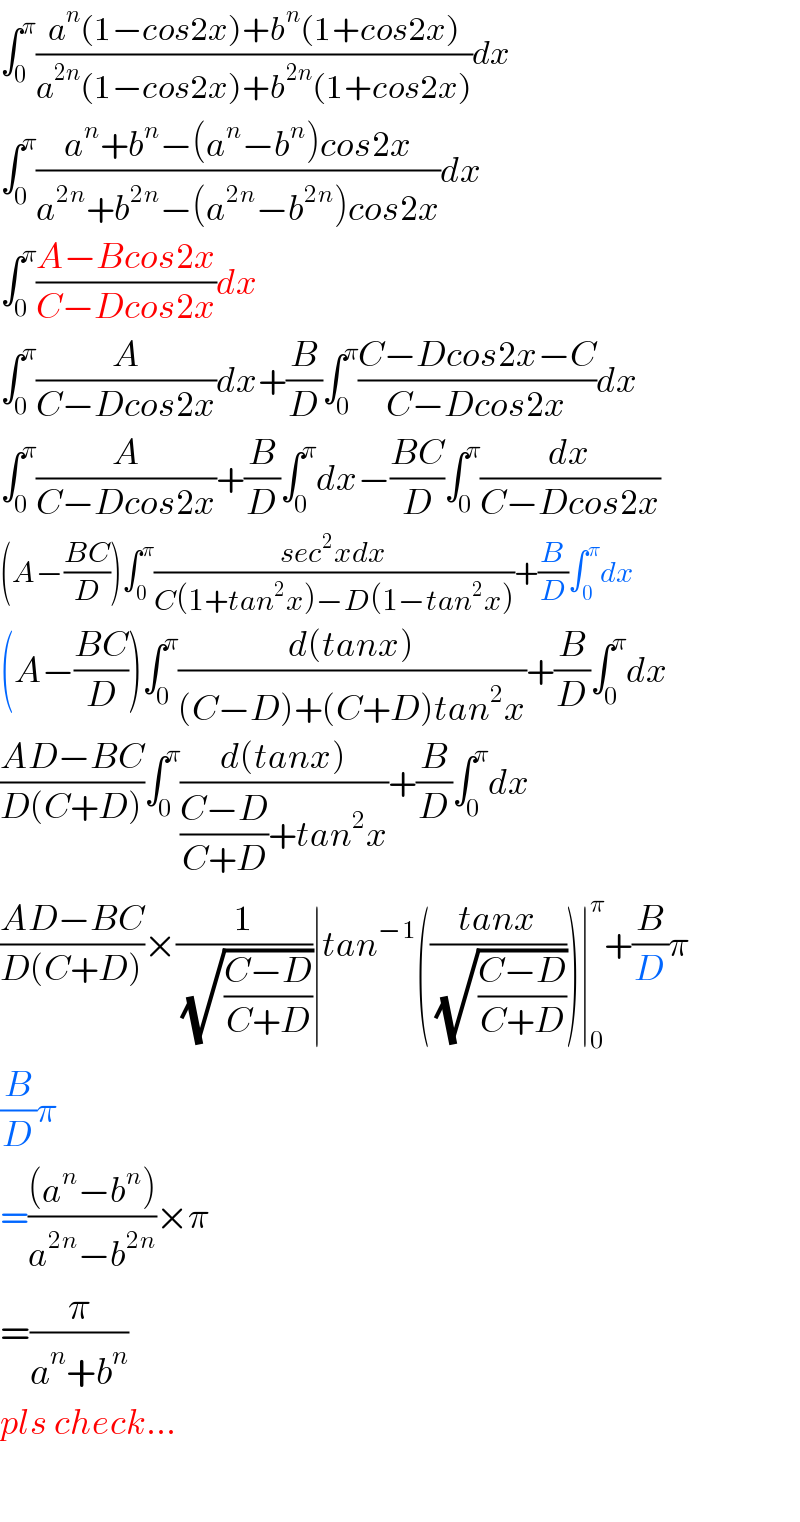 ∫_0 ^π ((a^n (1−cos2x)+b^n (1+cos2x))/(a^(2n) (1−cos2x)+b^(2n) (1+cos2x)))dx  ∫_0 ^π ((a^n +b^n −(a^n −b^n )cos2x)/(a^(2n) +b^(2n) −(a^(2n) −b^(2n) )cos2x))dx  ∫_0 ^π ((A−Bcos2x)/(C−Dcos2x))dx  ∫_0 ^π (A/(C−Dcos2x))dx+(B/D)∫_0 ^π ((C−Dcos2x−C)/(C−Dcos2x))dx  ∫_0 ^π (A/(C−Dcos2x))+(B/D)∫_0 ^π dx−((BC)/D)∫_0 ^π (dx/(C−Dcos2x))  (A−((BC)/D))∫_0 ^π ((sec^2 xdx)/(C(1+tan^2 x)−D(1−tan^2 x)))+(B/D)∫_0 ^π dx  (A−((BC)/D))∫_0 ^π ((d(tanx))/((C−D)+(C+D)tan^2 x))+(B/D)∫_0 ^π dx  ((AD−BC)/(D(C+D)))∫_0 ^π ((d(tanx))/(((C−D)/(C+D))+tan^2 x))+(B/D)∫_0 ^π dx  ((AD−BC)/(D(C+D)))×(1/(√((C−D)/(C+D))))∣tan^(−1) (((tanx)/(√((C−D)/(C+D)))))∣_0 ^π +(B/D)π  (B/D)π  =(((a^n −b^n ))/(a^(2n) −b^(2n) ))×π  =(π/(a^n +b^n ))  pls check...    